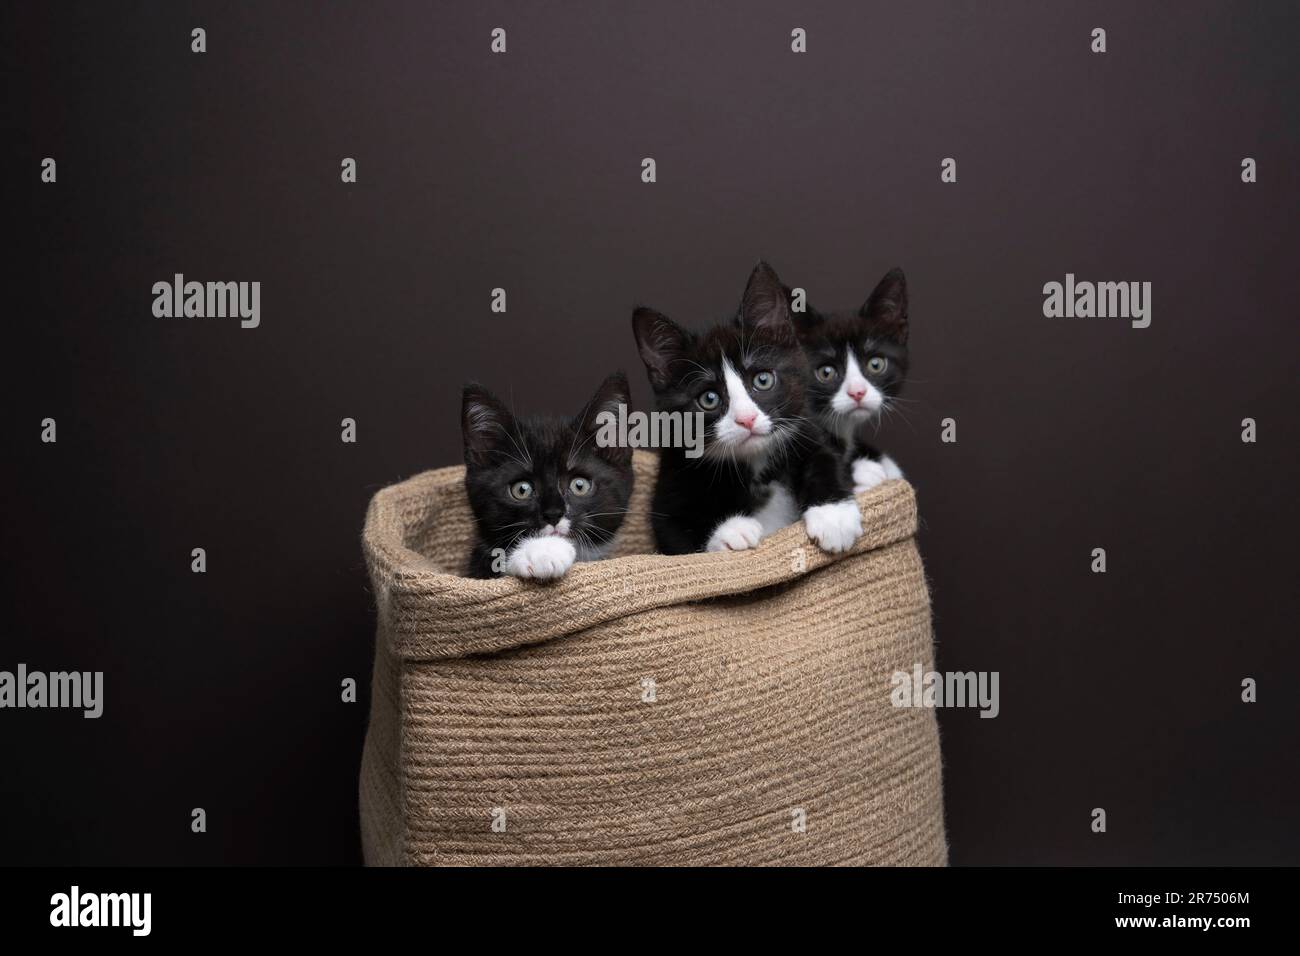 gruppo di tre gattini all'interno di un cesto. I gatti stanno guardando la macchina fotografica curiosamente, fotografia studio su sfondo scuro con spazio di copia. Foto Stock